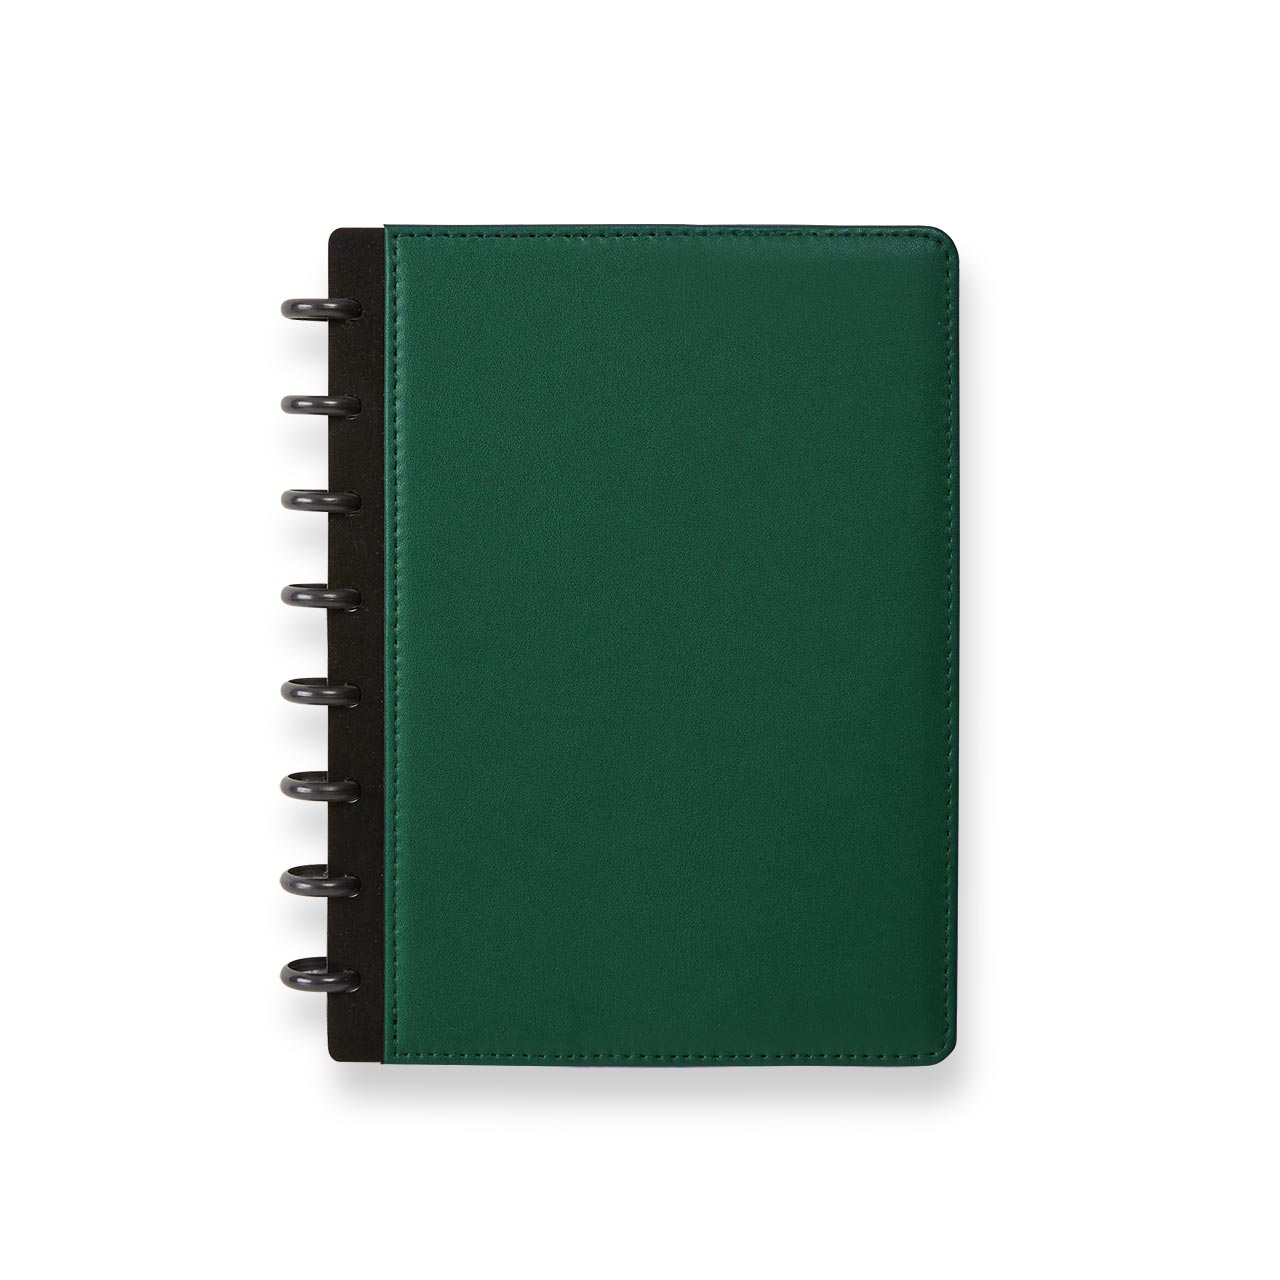 Circa LevTex Foldover Notebook